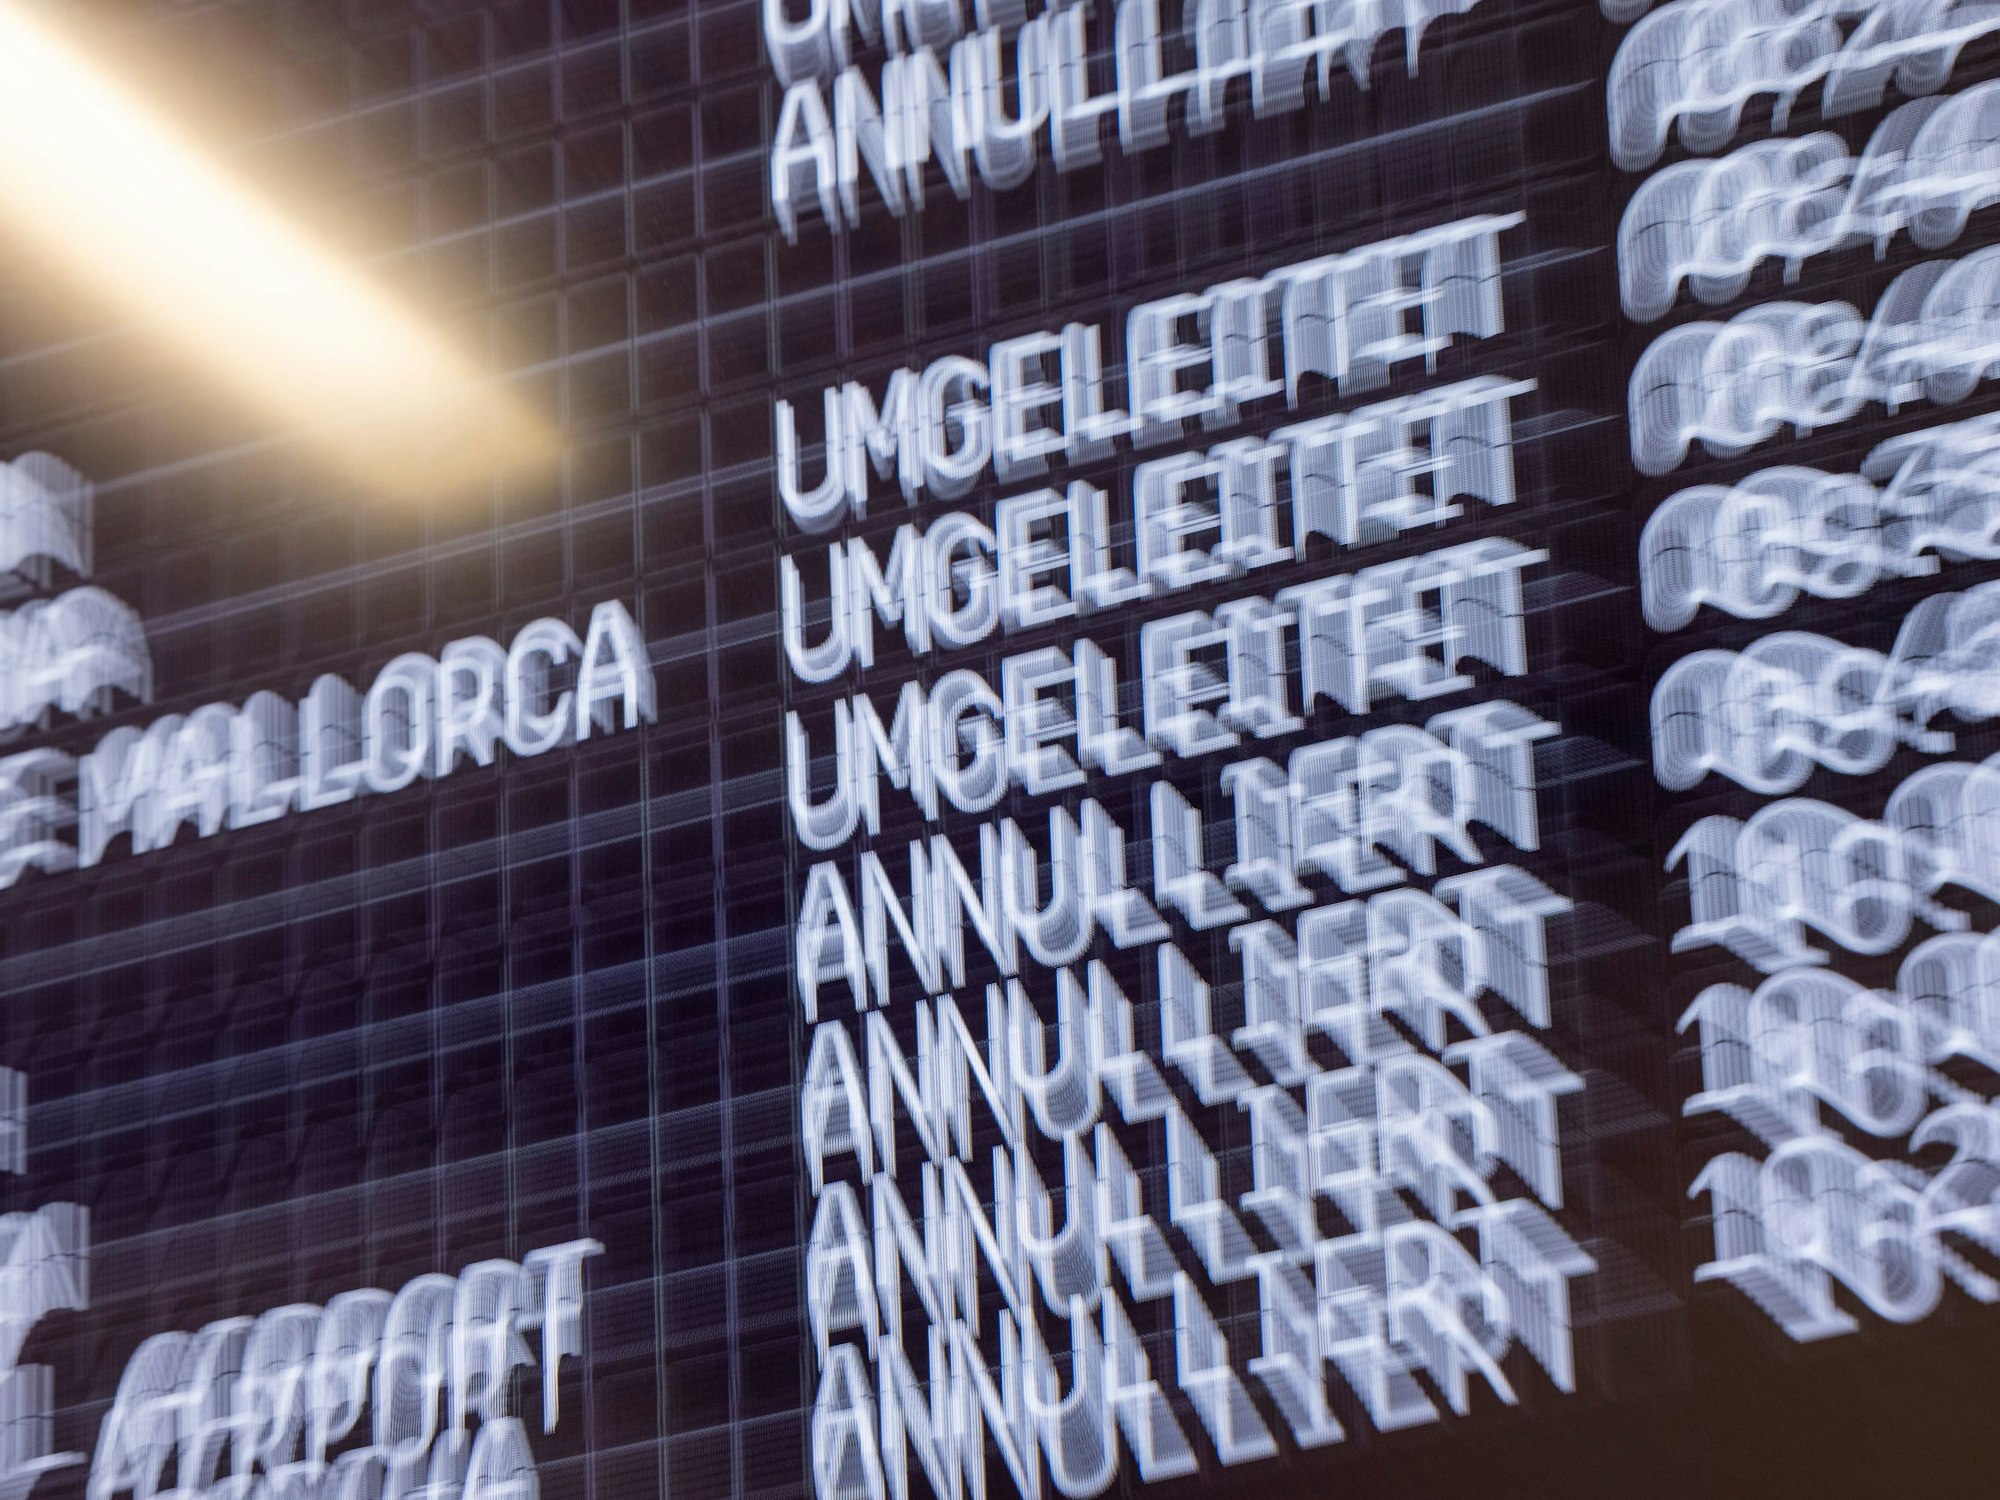 Ein Anzeigendisplay im Flughafen Köln/Bonn informiert über die annullierten oder umgeleiteten Flüge.